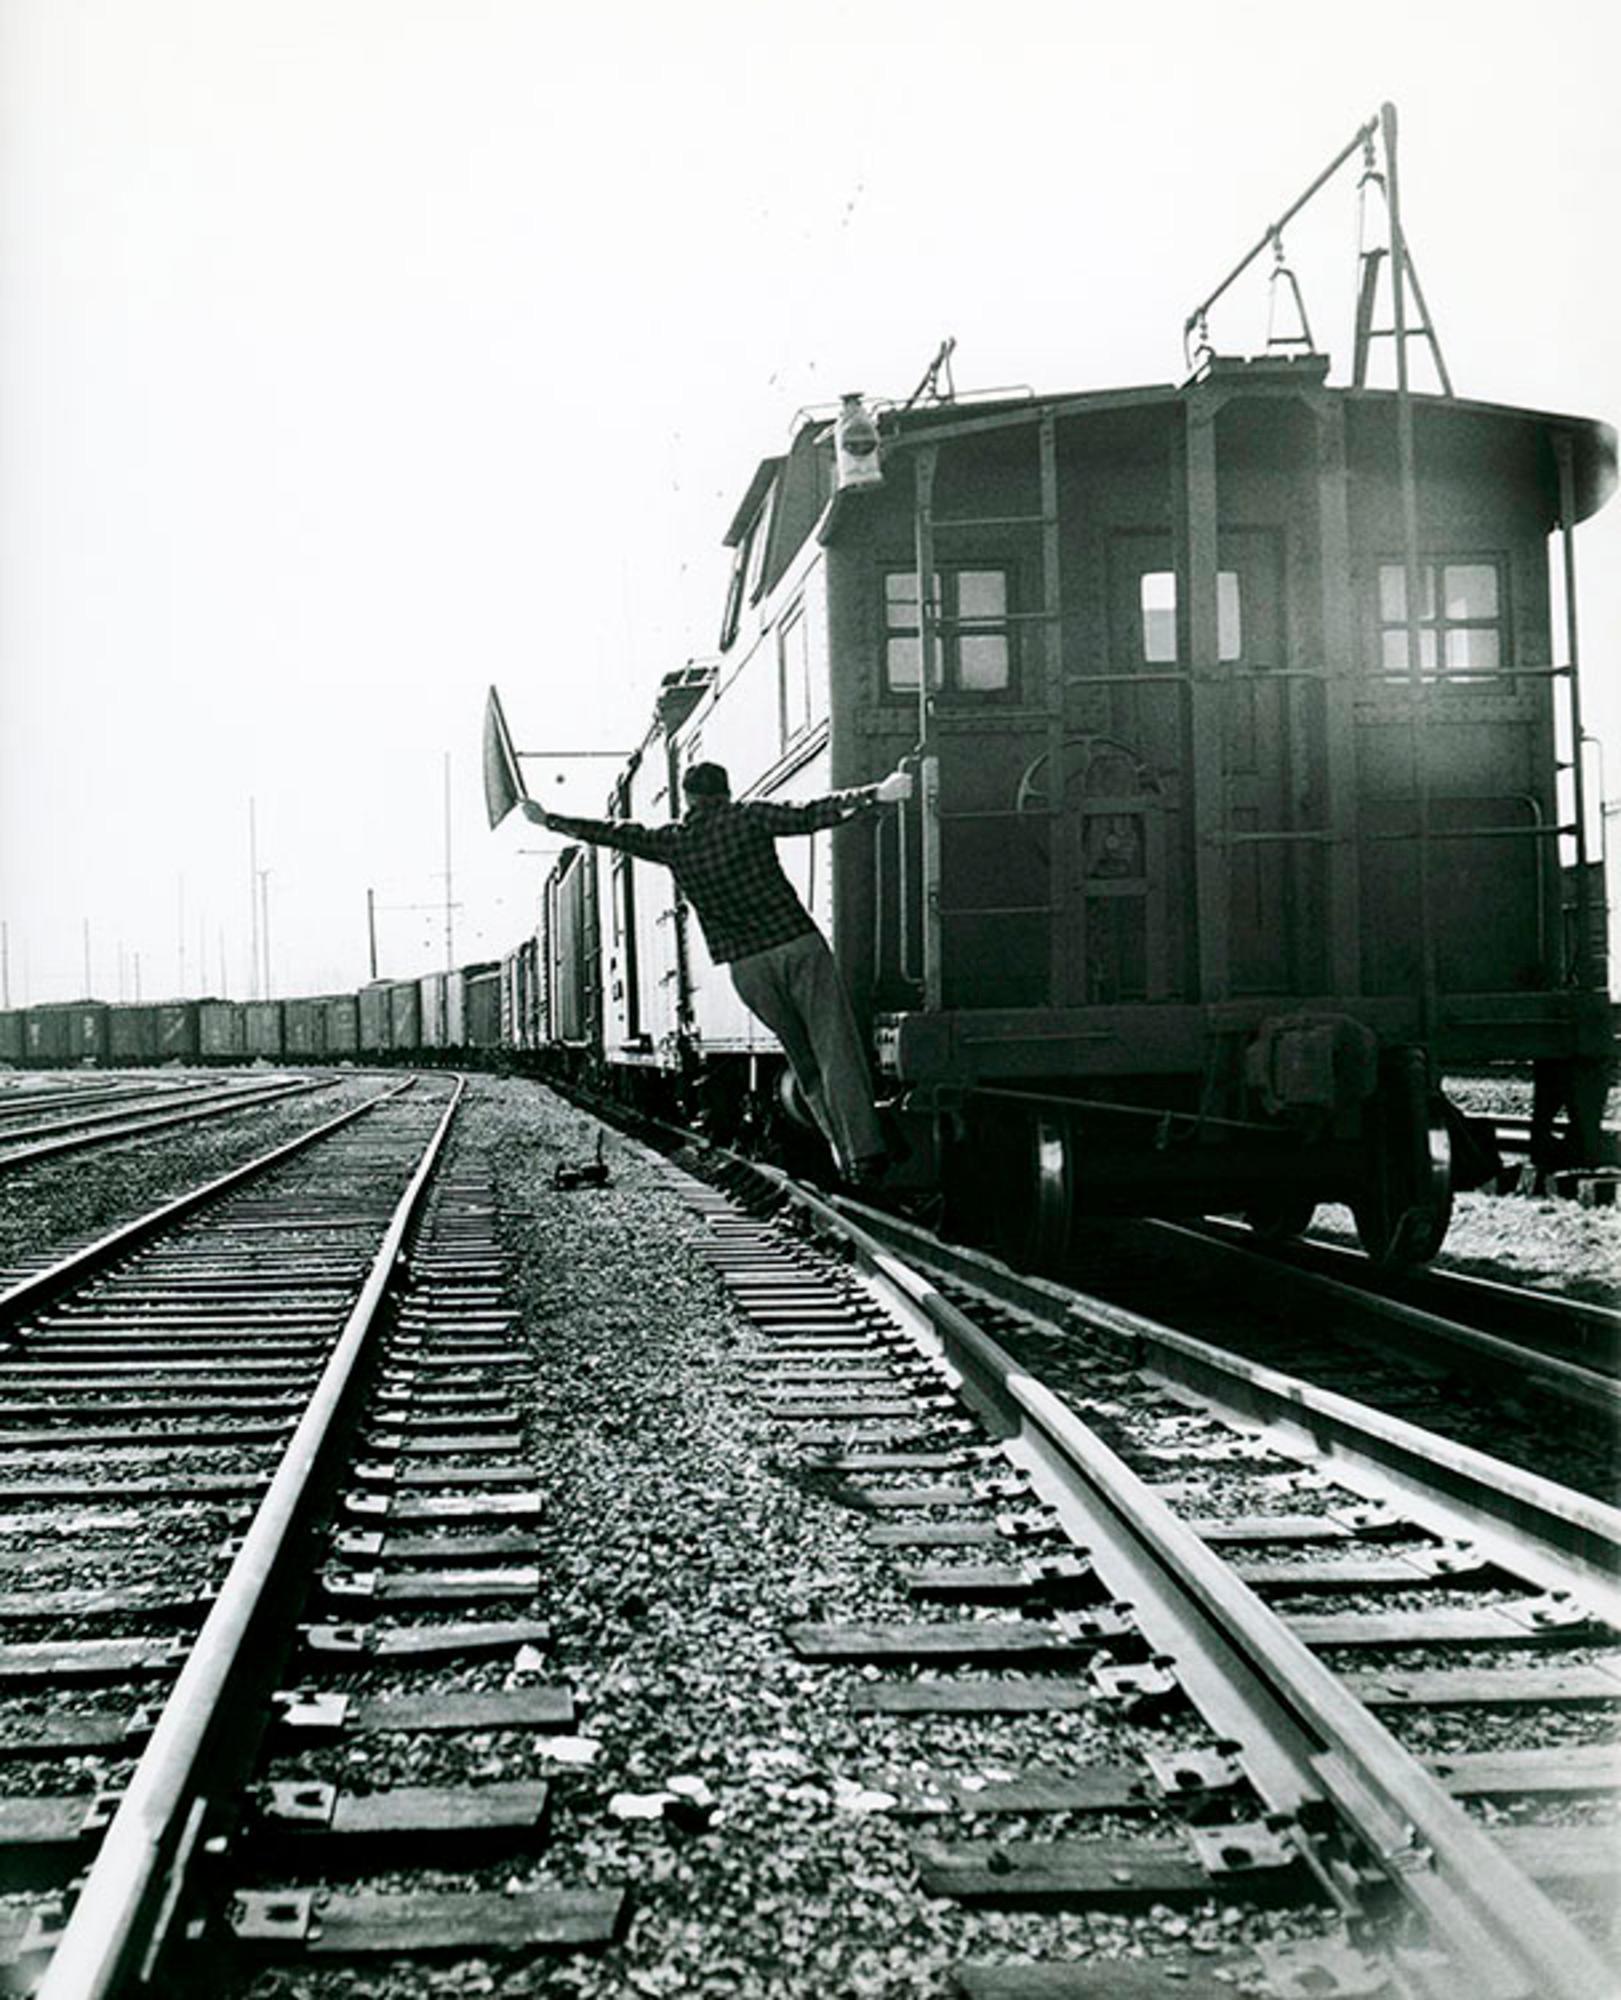 Lawrence Fried - Railway Signalman NYC, Fotografie 1951, Nachdruck